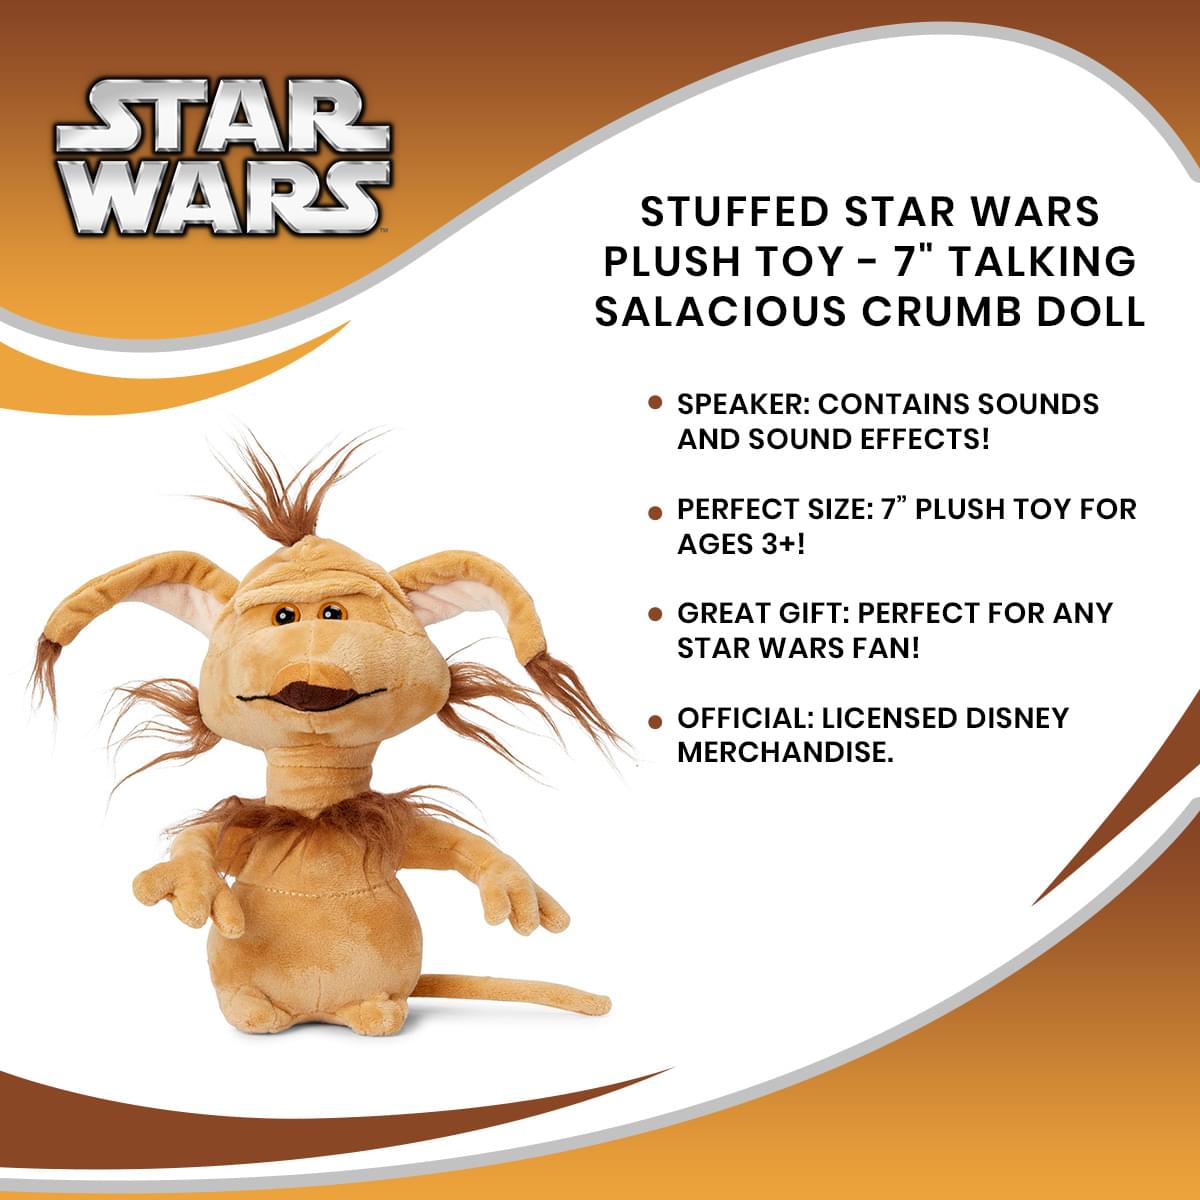 Stuffed Star Wars Plush Toy - 7" Talking Salacious Crumb Doll